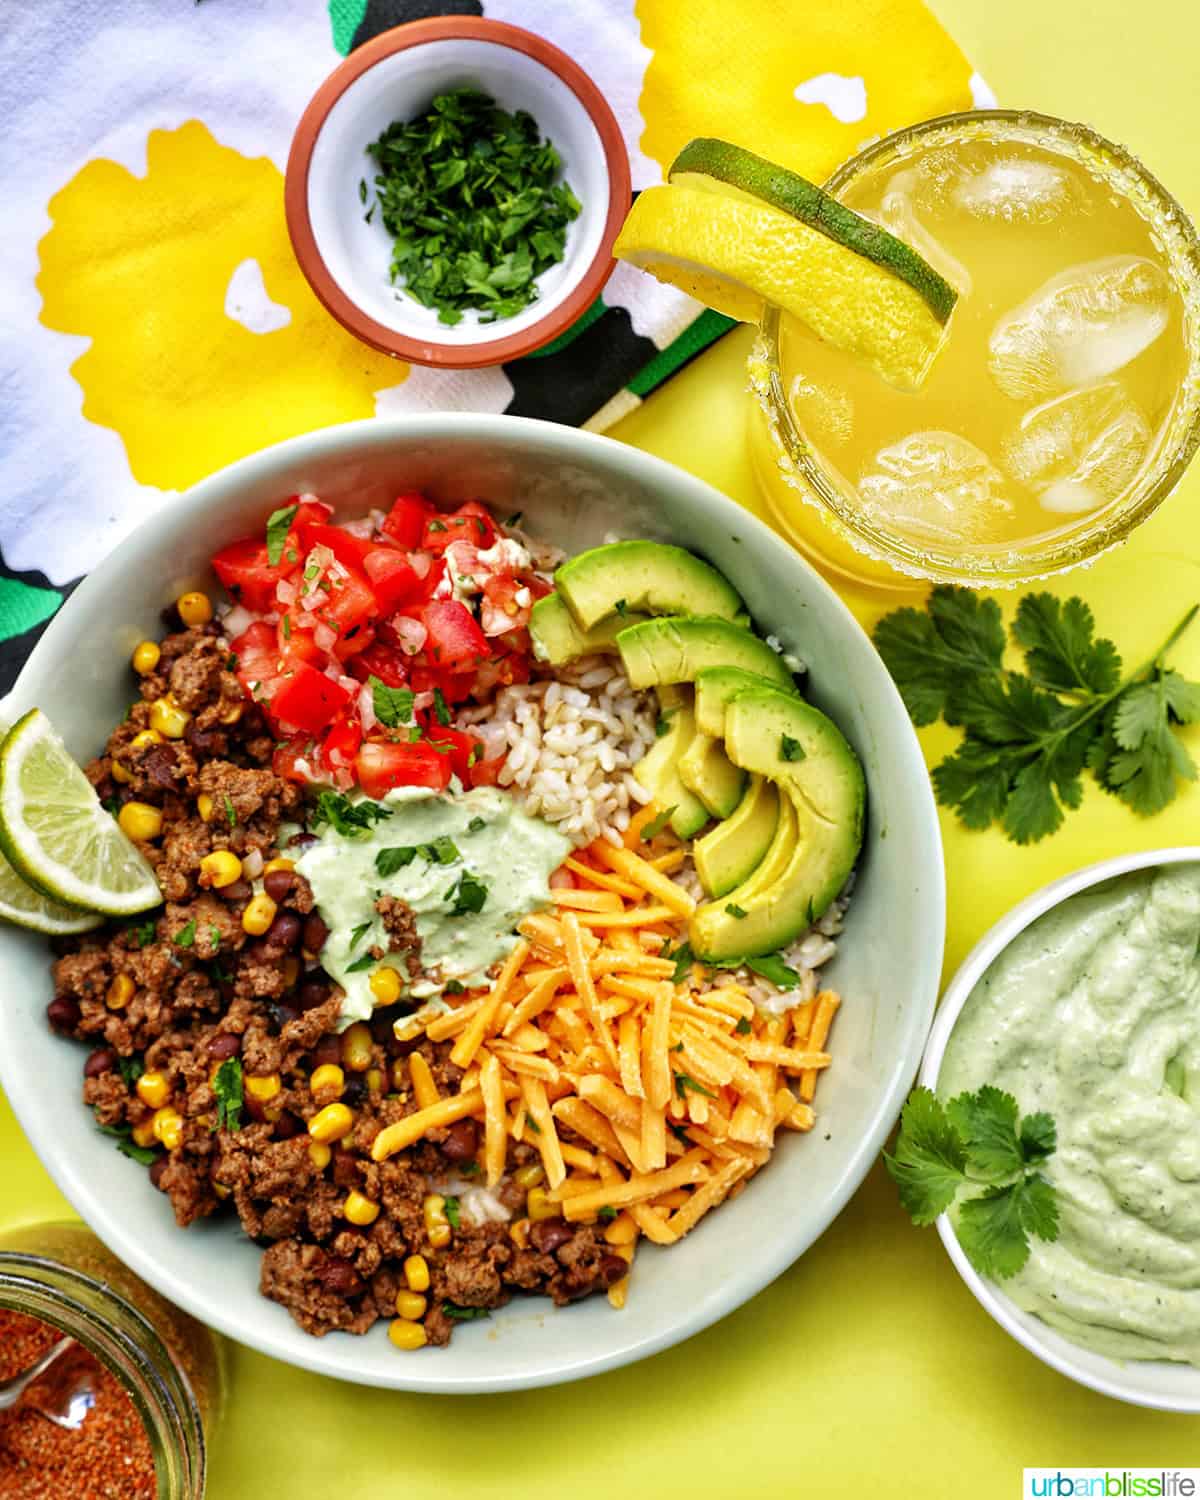 taco bowl with ground beef, beans, cheese, pico de gallo, avocado, rice, avocado cilantro lime crema with a yuzu margarita.